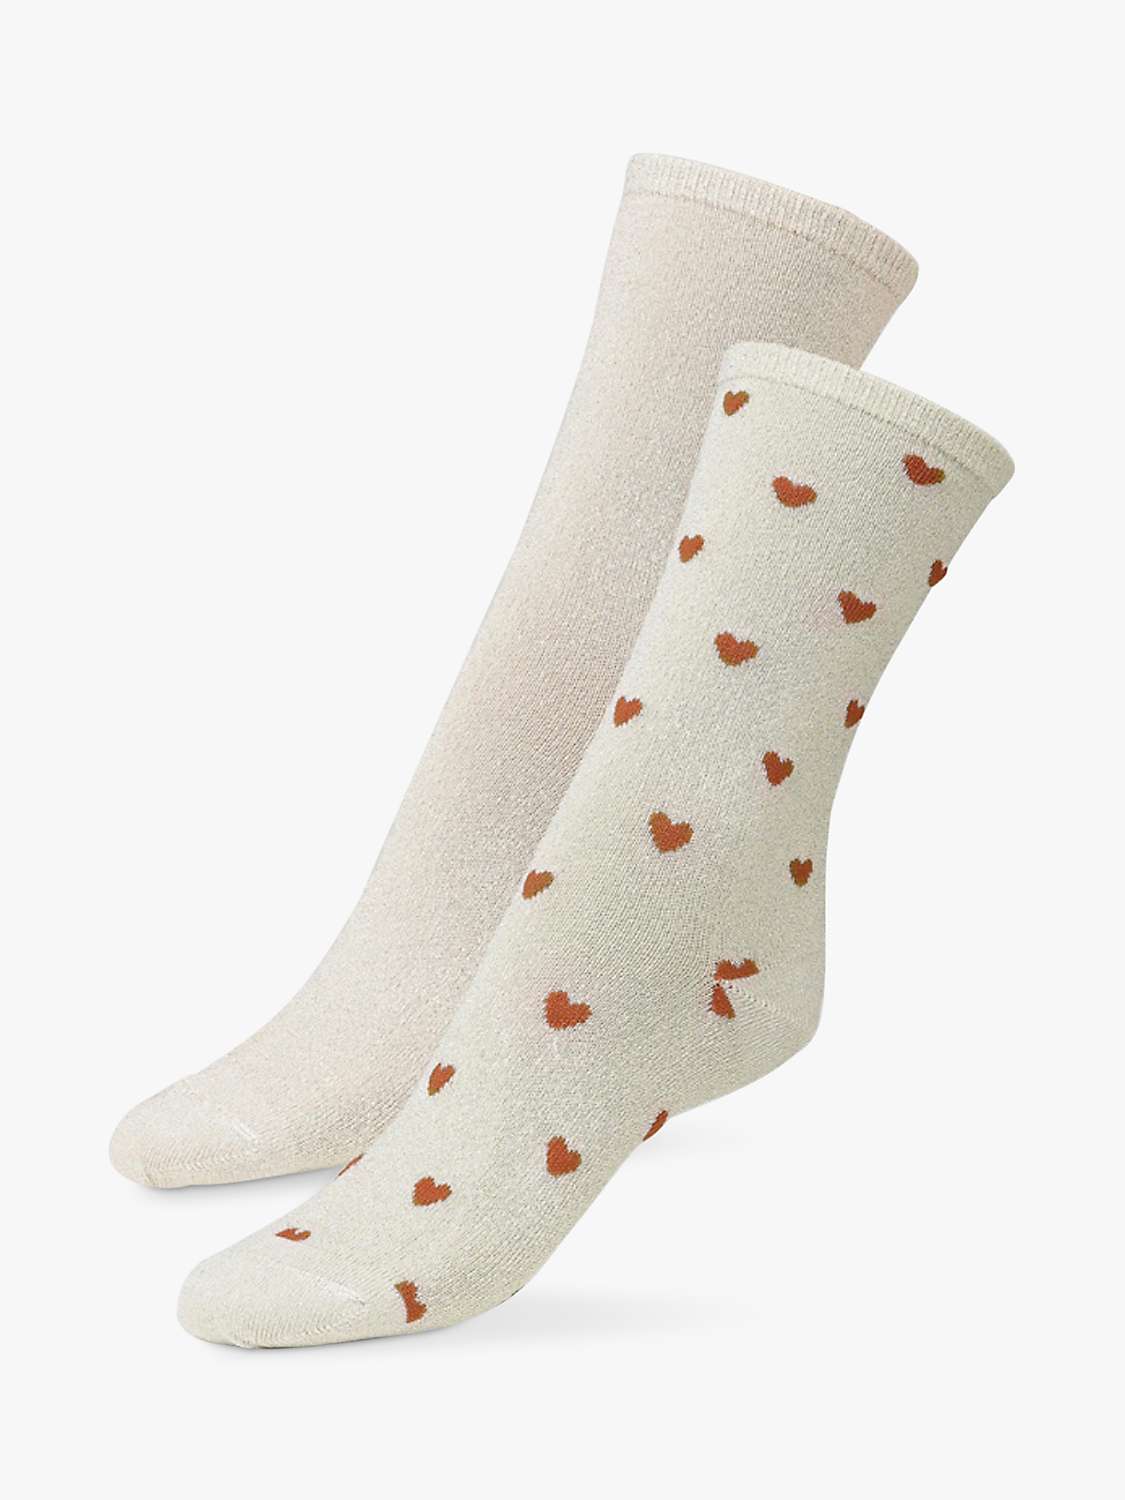 Buy Dear Denier Mei Soft Glitter Heart Socks, Pack of 2, Gold/Multi Online at johnlewis.com